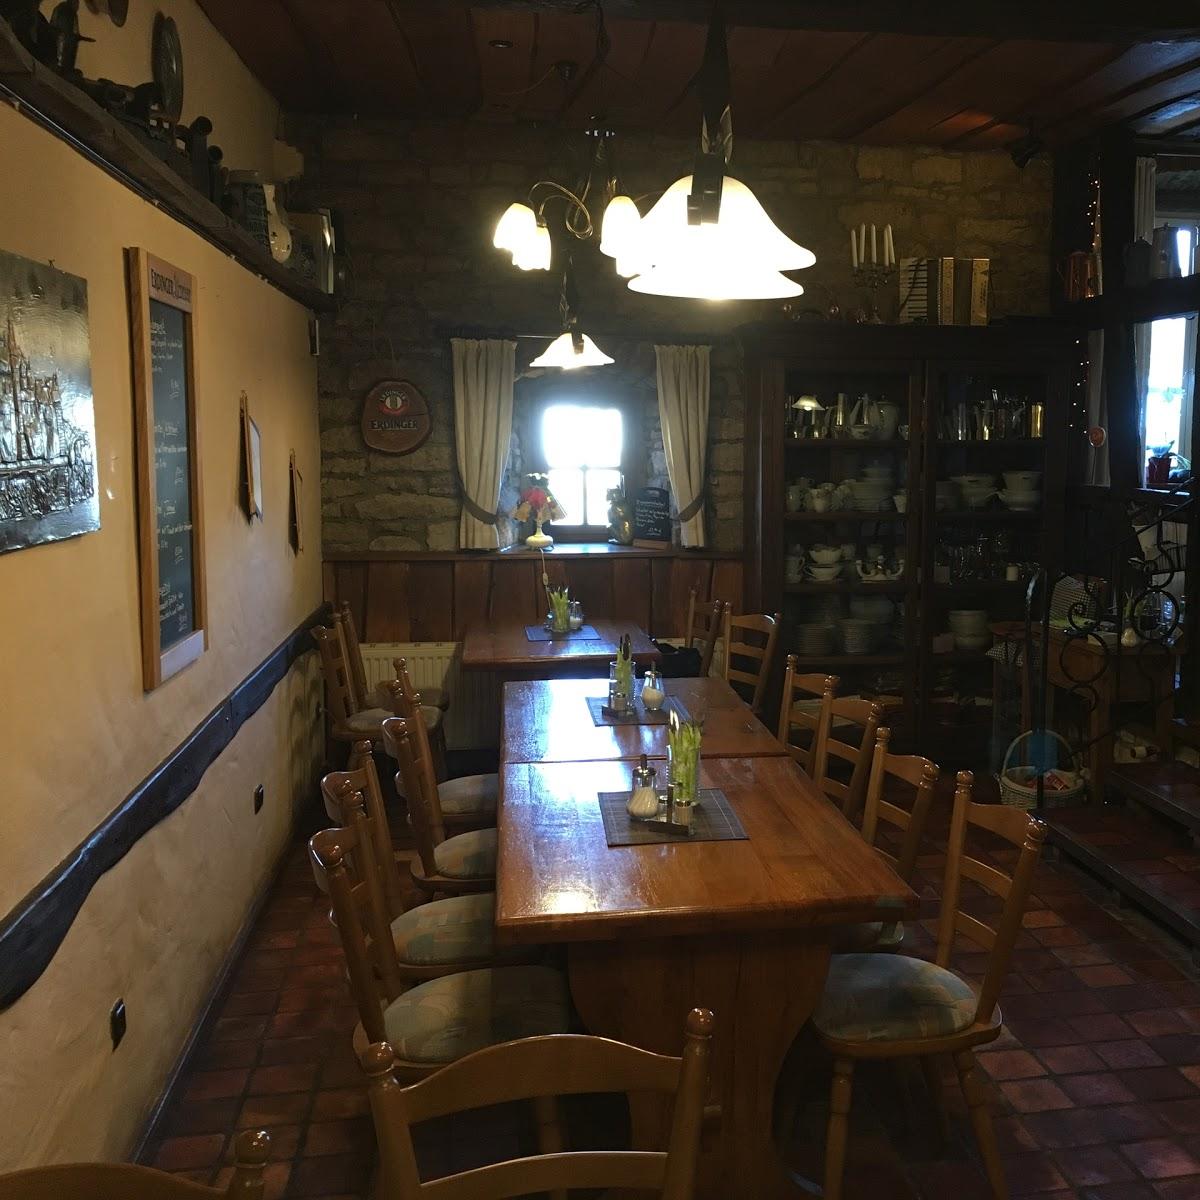 Restaurant "Landgasthof Alt-" in Birkenfeld